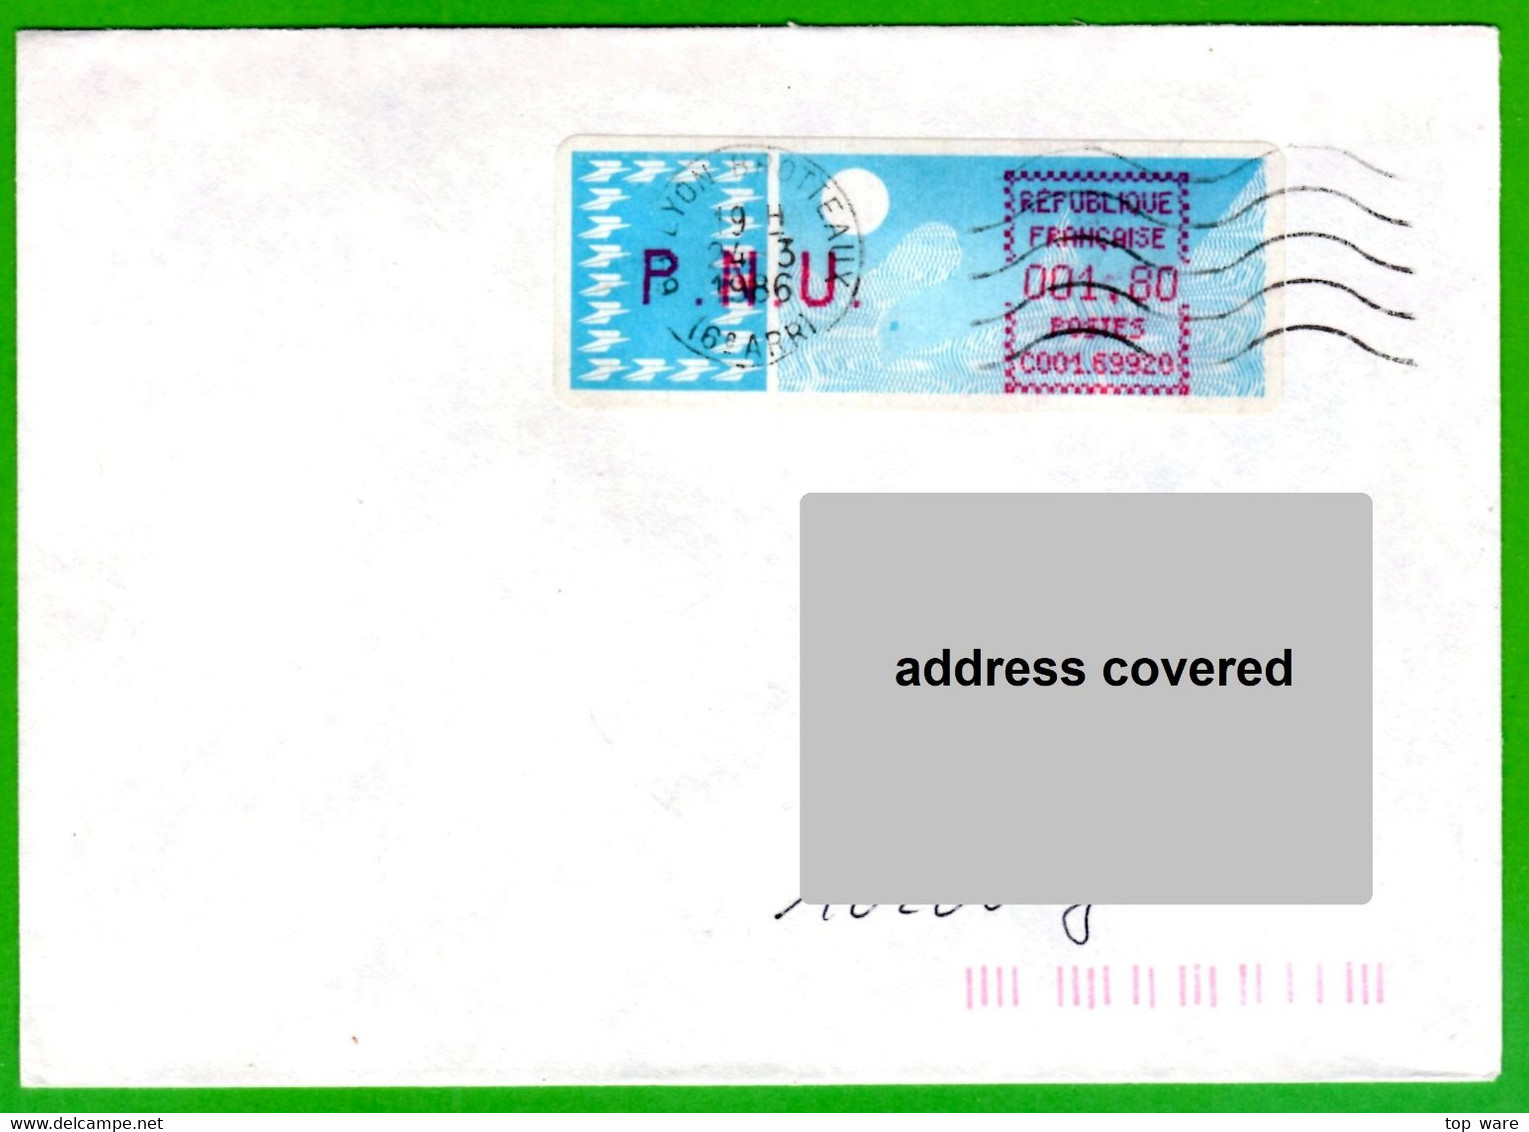 France LSA ATM Stamps C001.69920 / Michel 6.6 Zd / PNU 1,80 On Cover 24.3.86 Lyon Brotteaux / Distributeurs - 1985 « Carrier » Paper